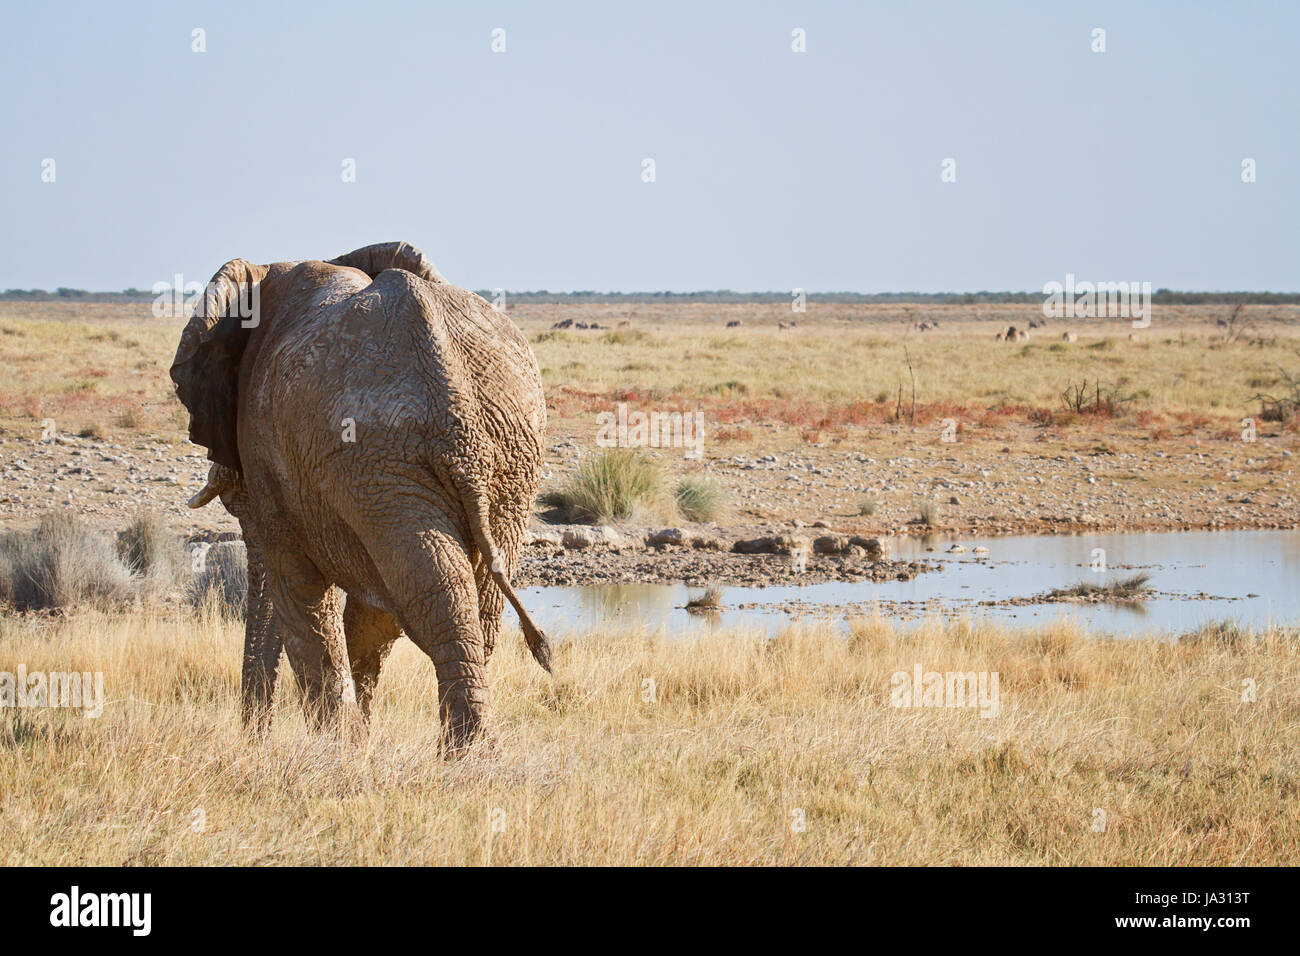 animal, africa, elephant, namibia, travel, holiday, vacation, holidays, Stock Photo